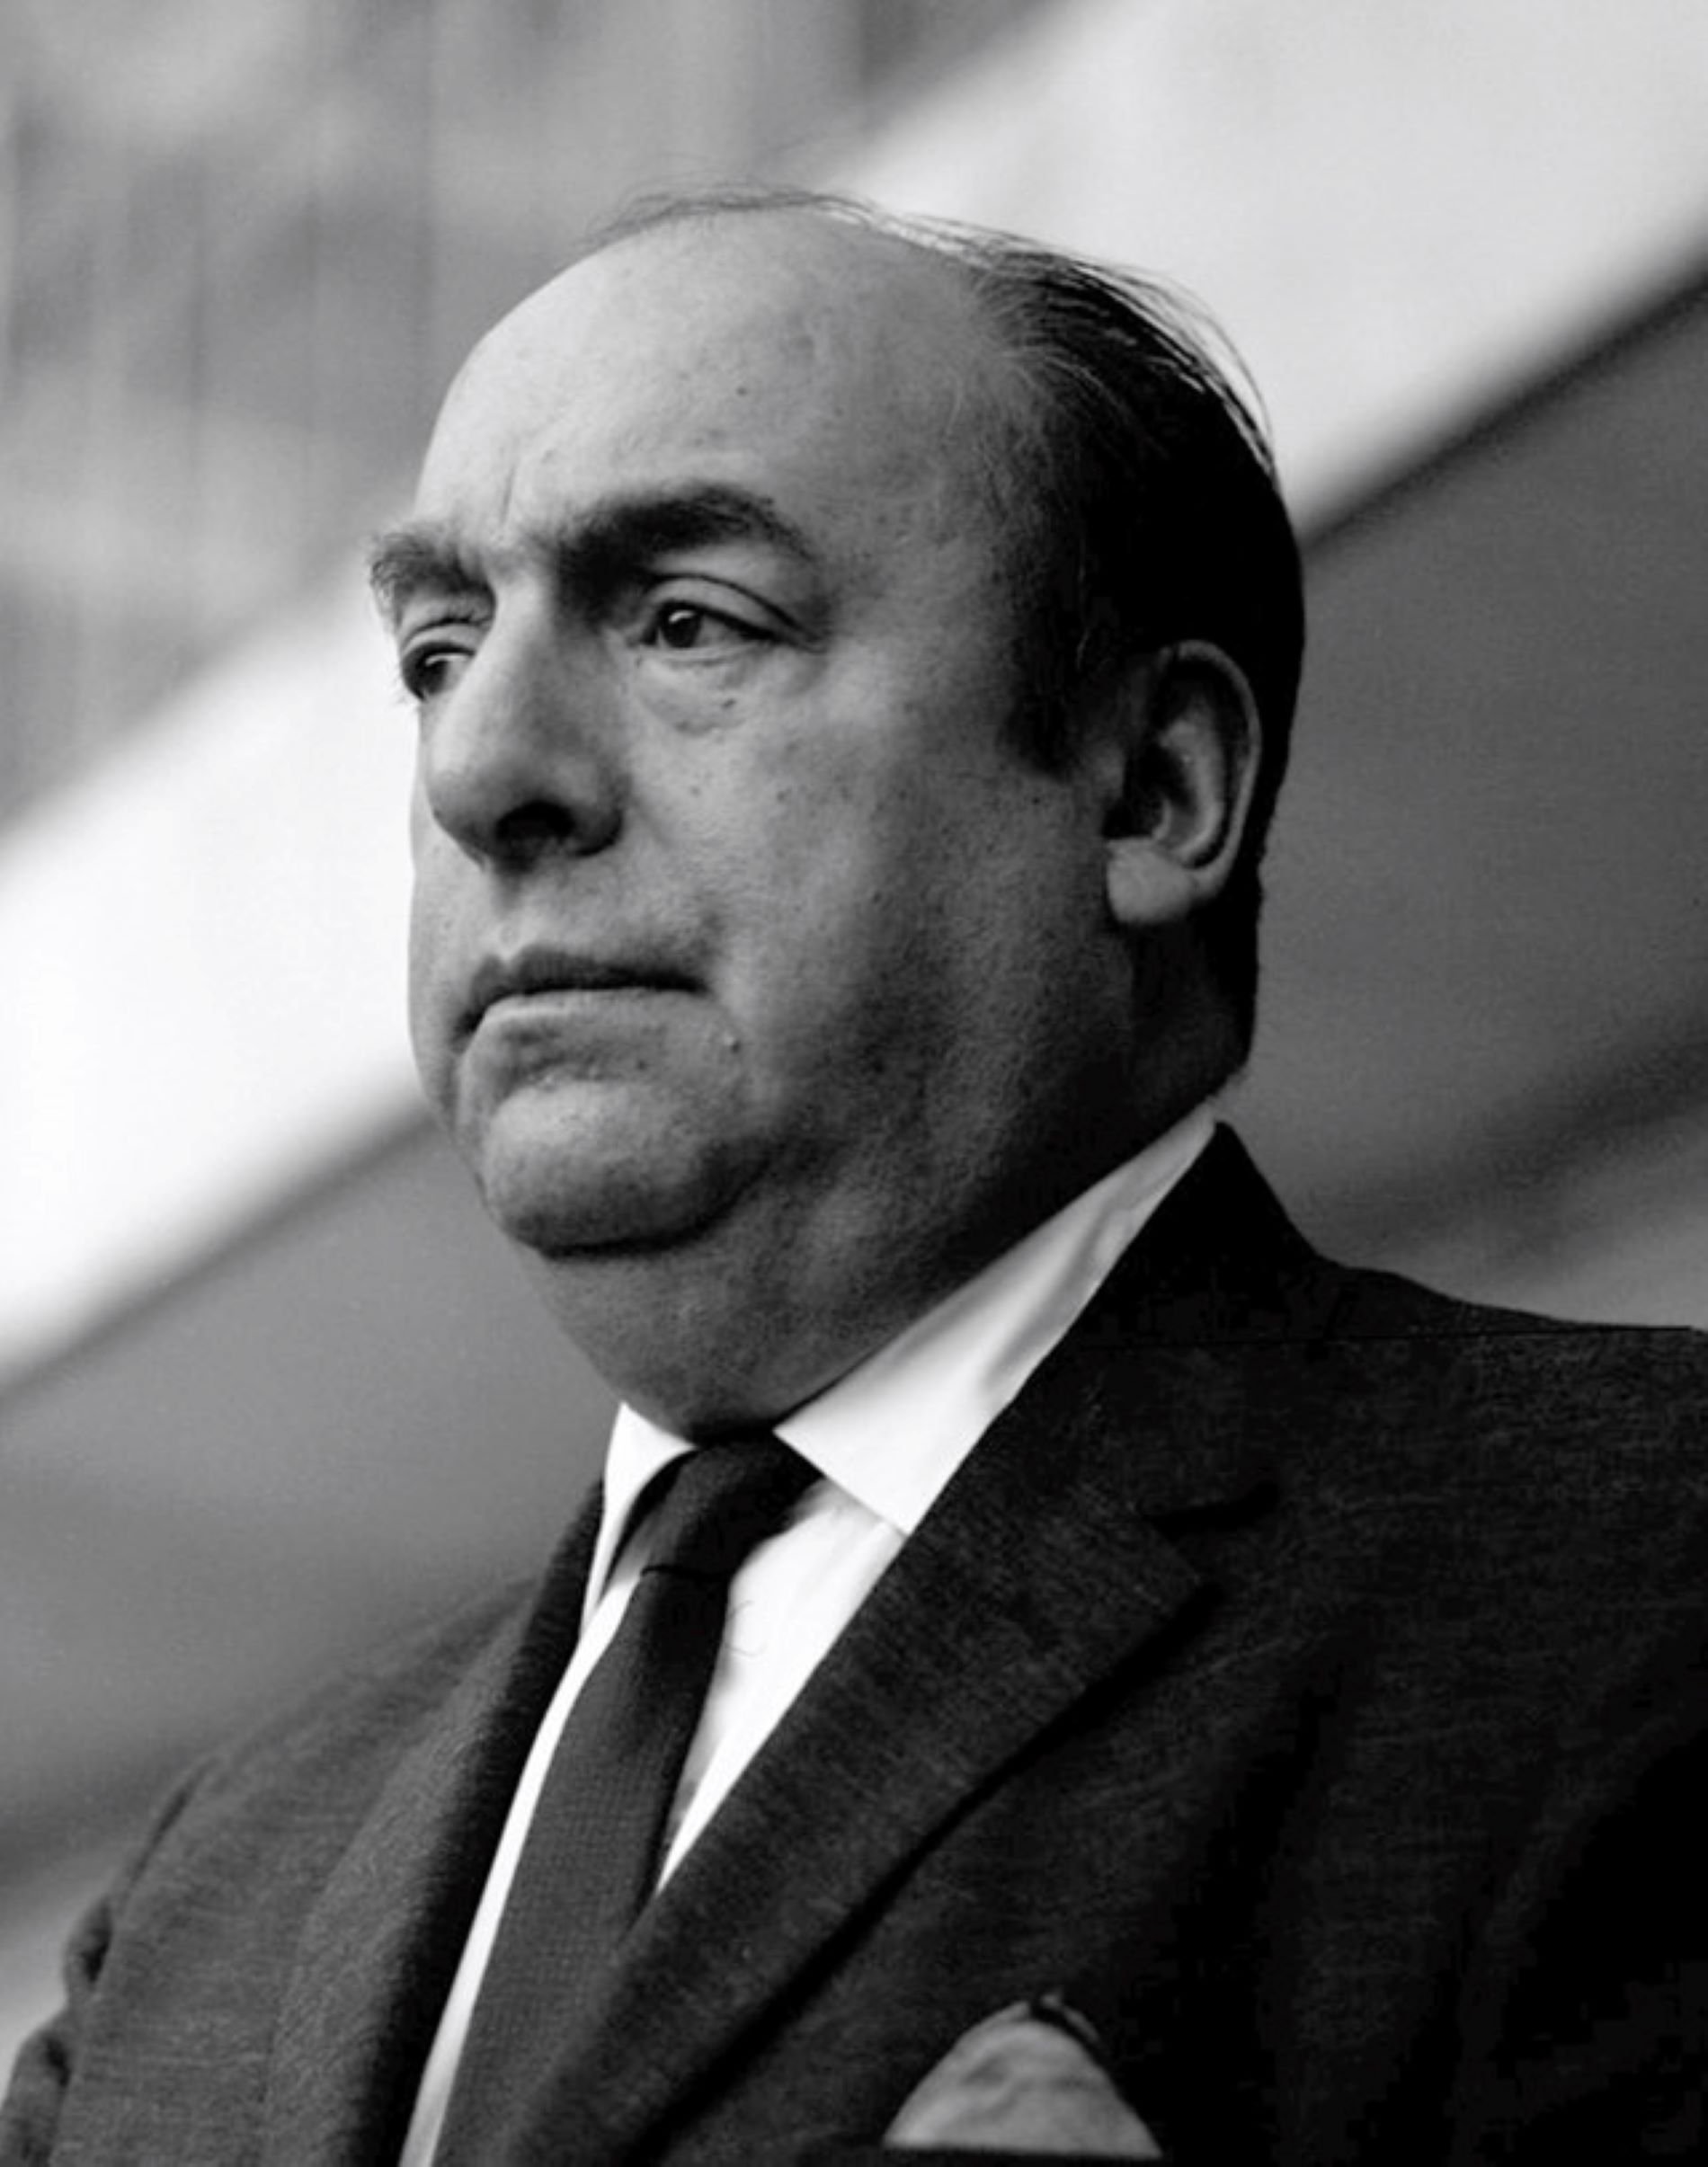 Pablo Neruda murió envenenado, según la familia